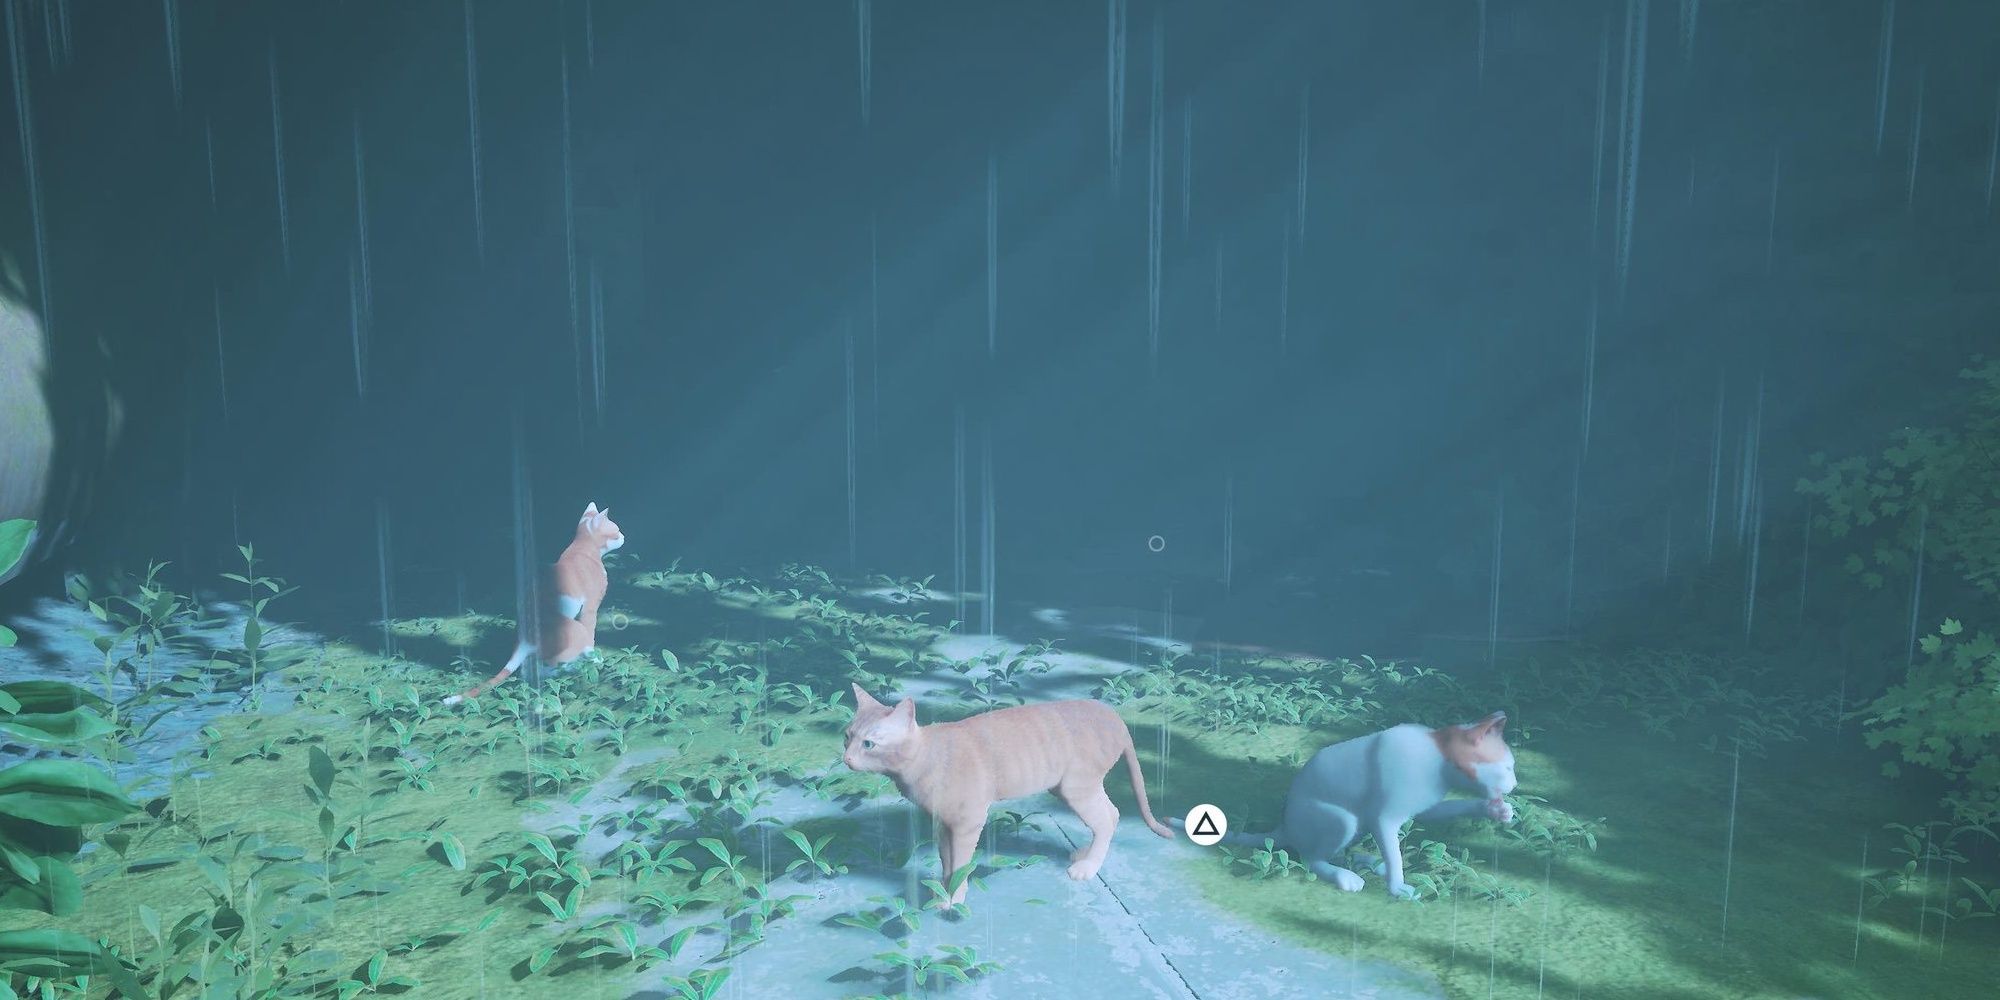 cats roaming in the rain stray